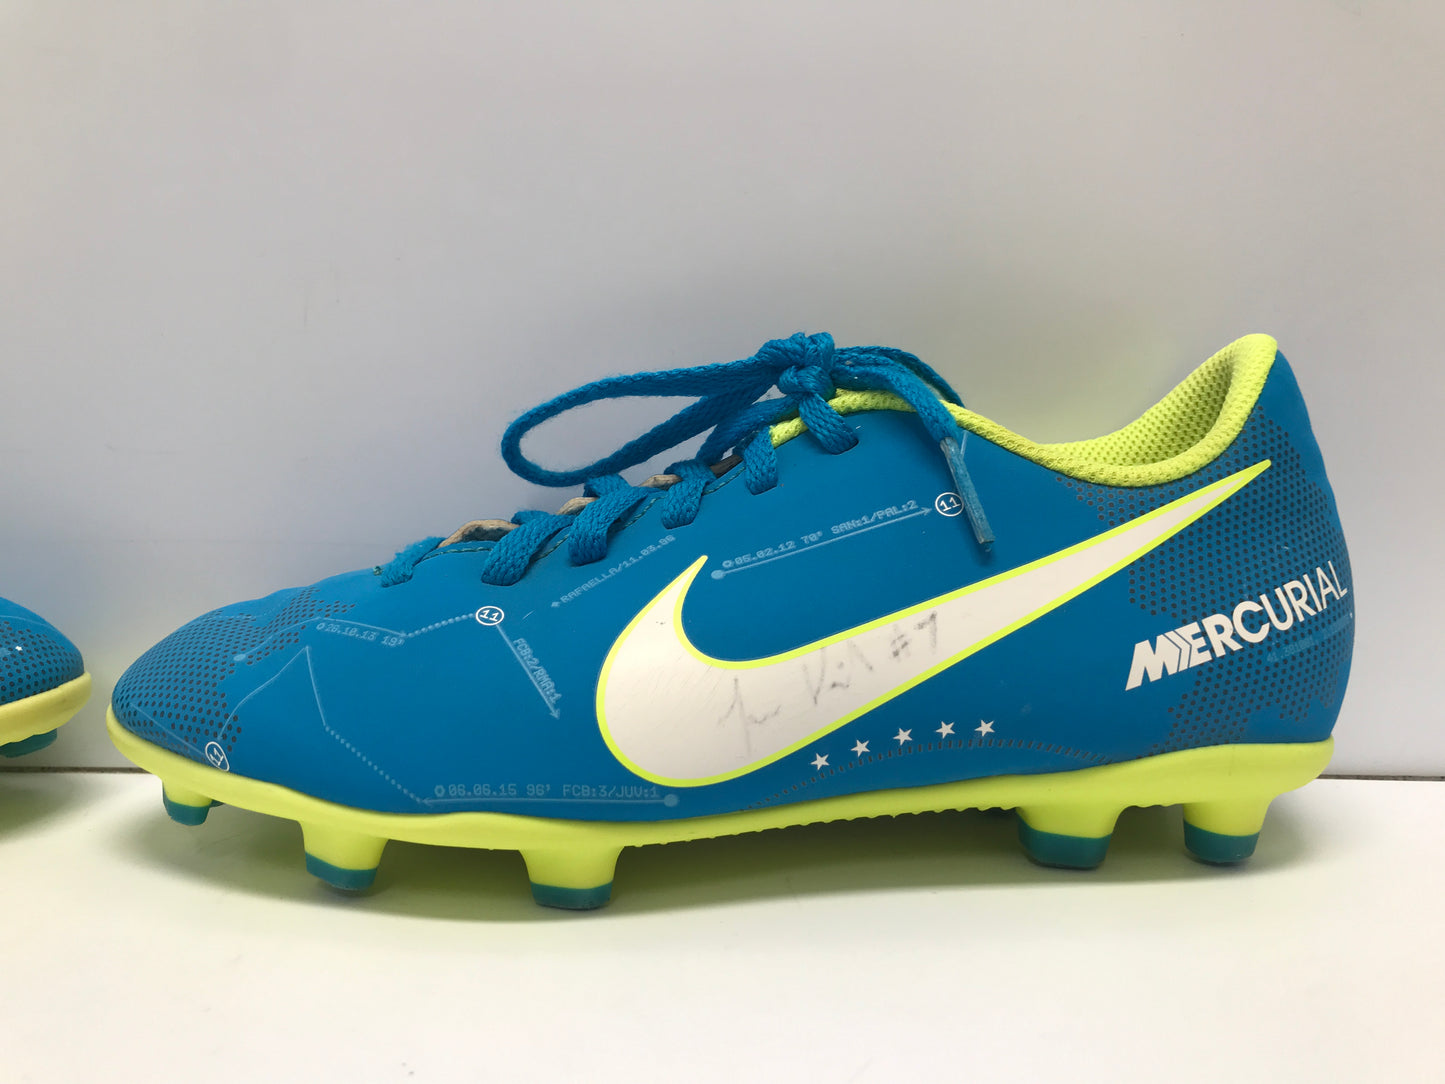 Soccer Shoes Cleats Child Size 3 Nike Mercurial Blue Lemon